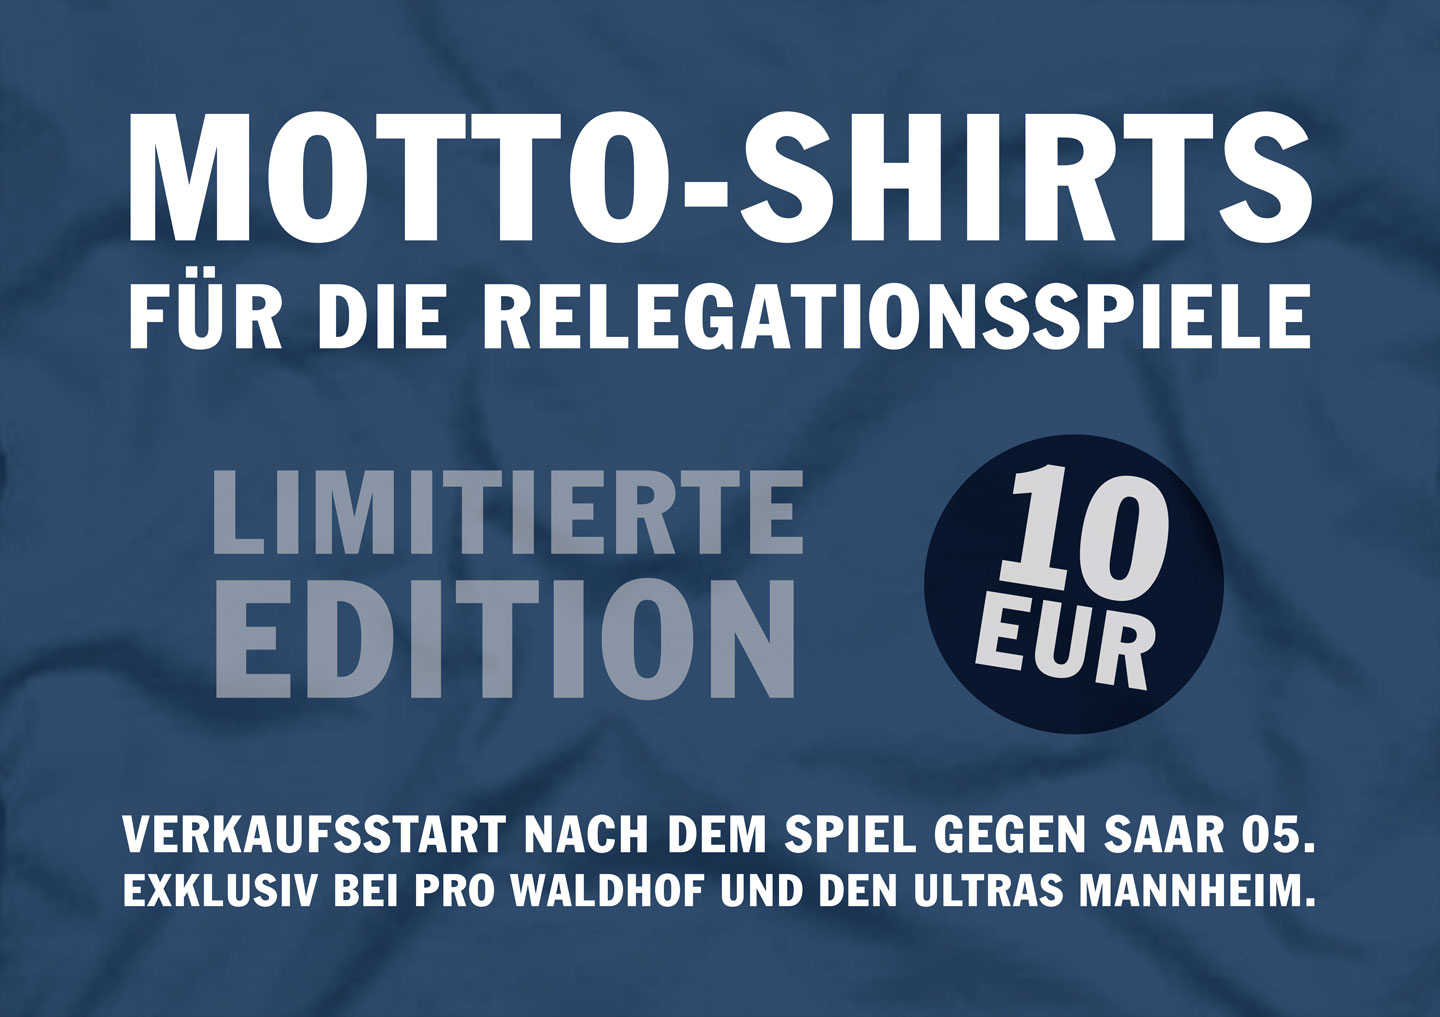 Motto-Shirts für die Relegationsspiele